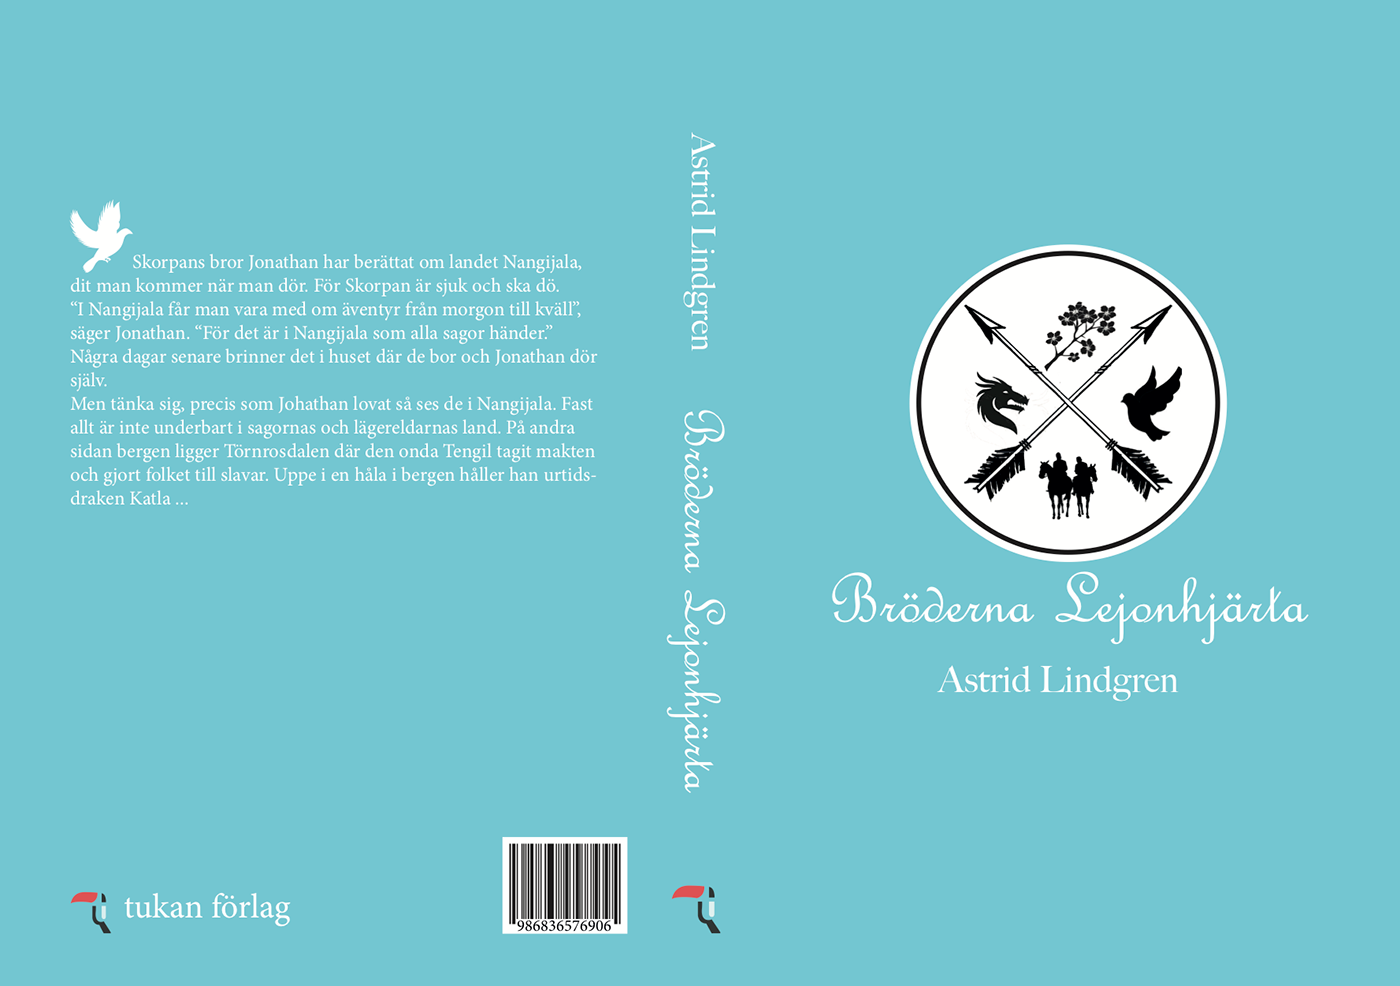 Astrid Lindgren book book cover cover design ILLUSTRATION  lionheart